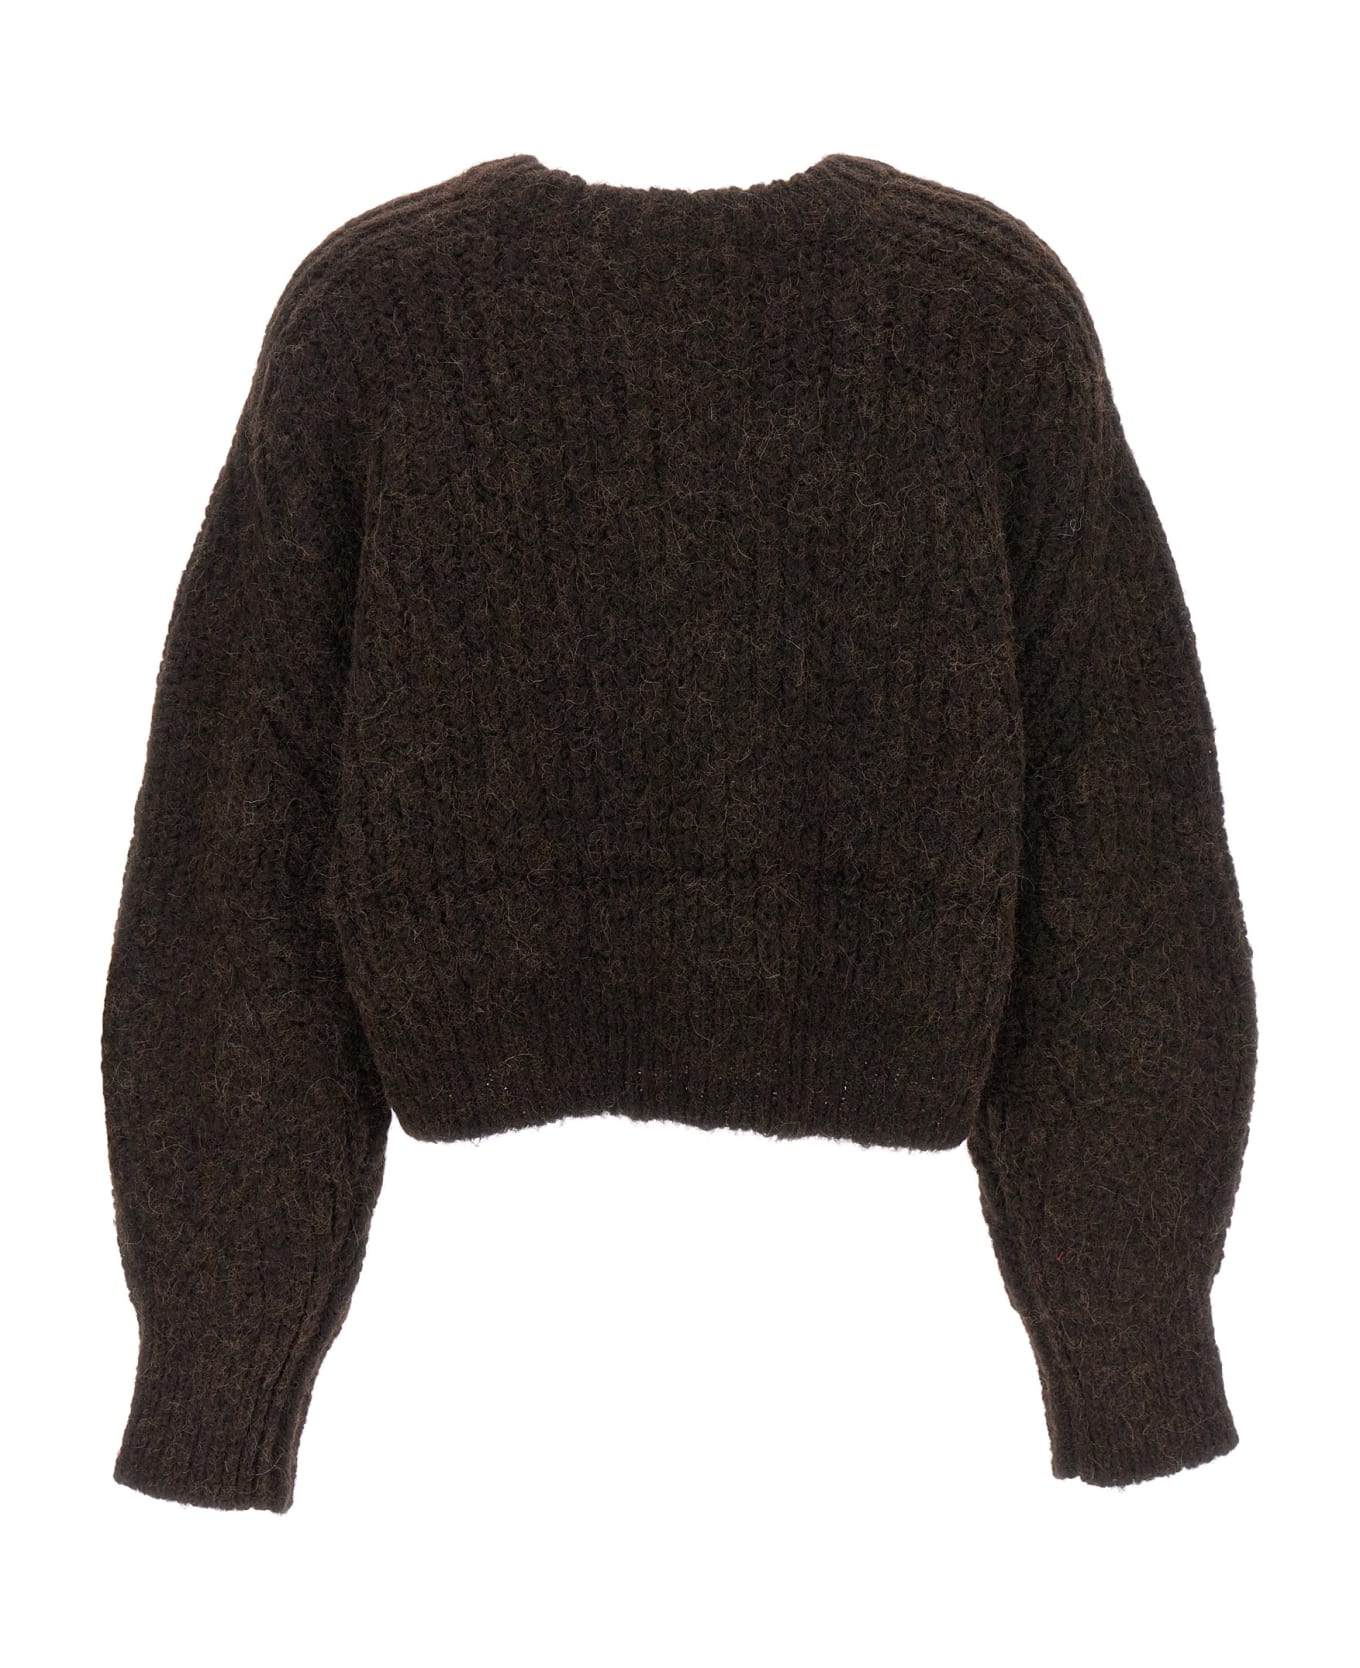 Rotate by Birger Christensen Logo Sweater - Brown